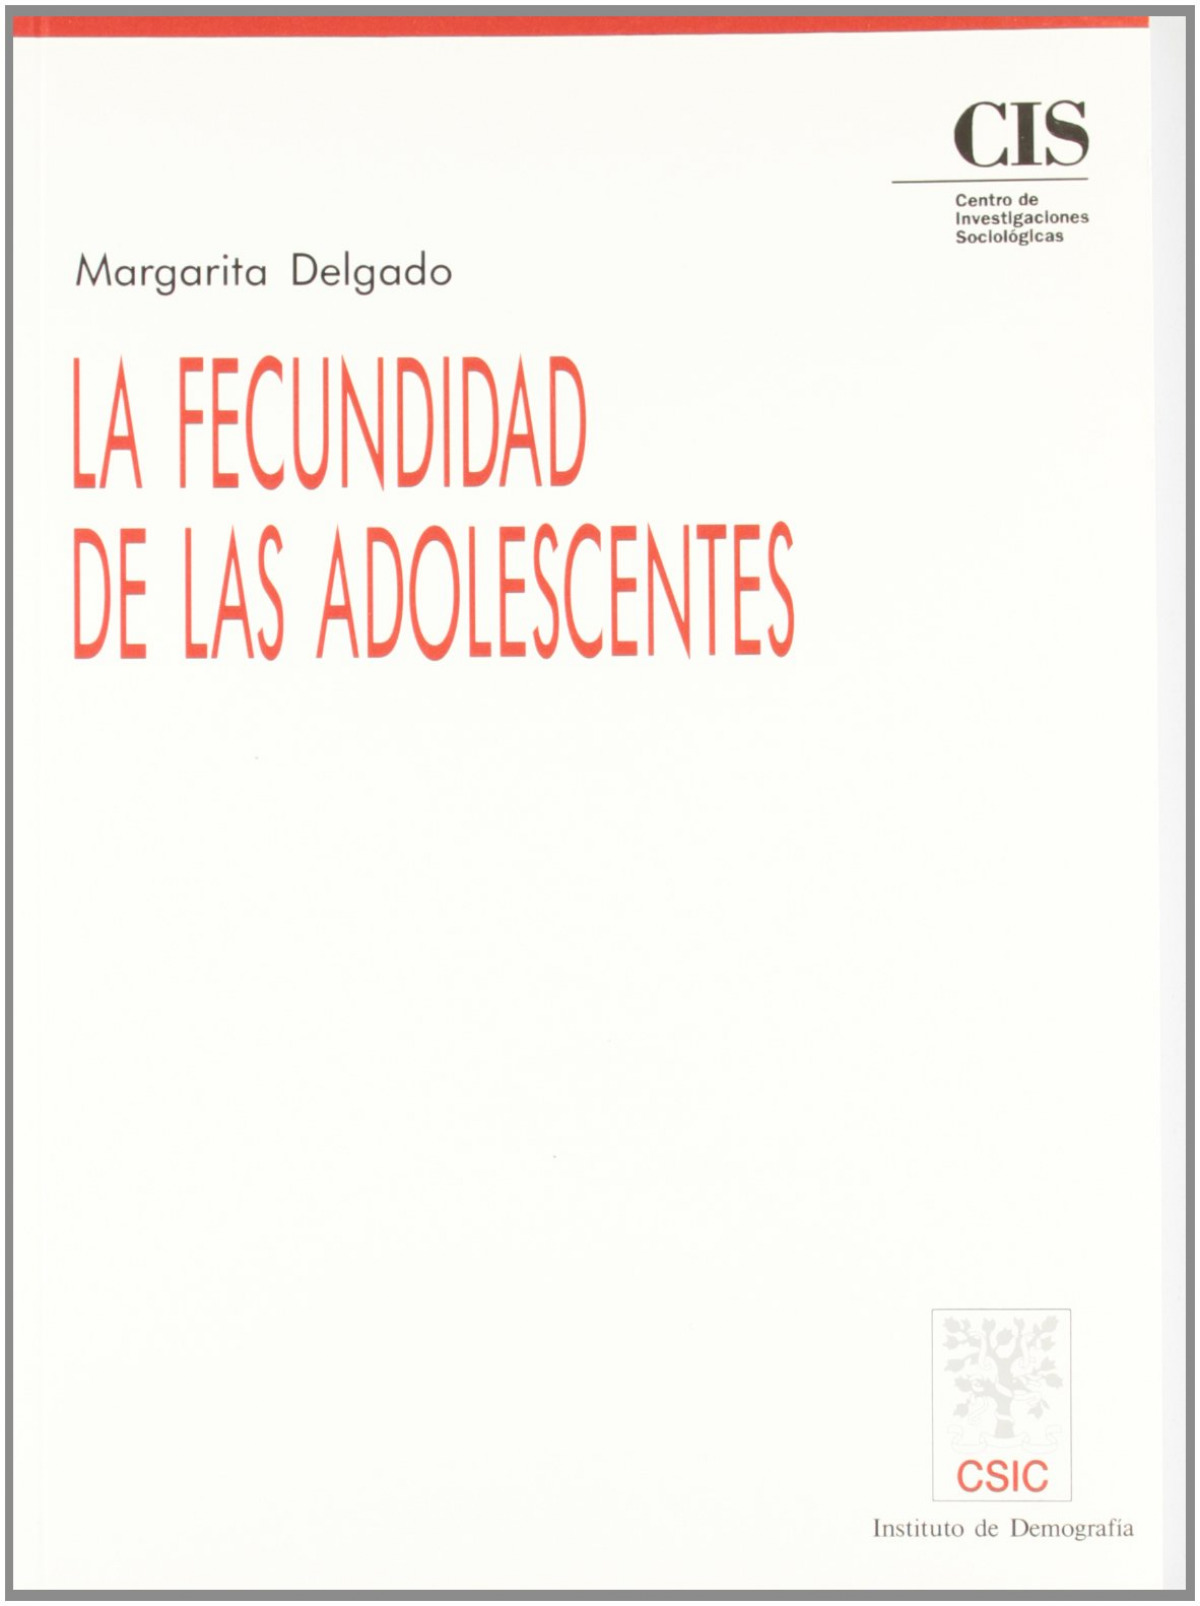 La fecundidad de las adolescentes - Delgado, Margarita